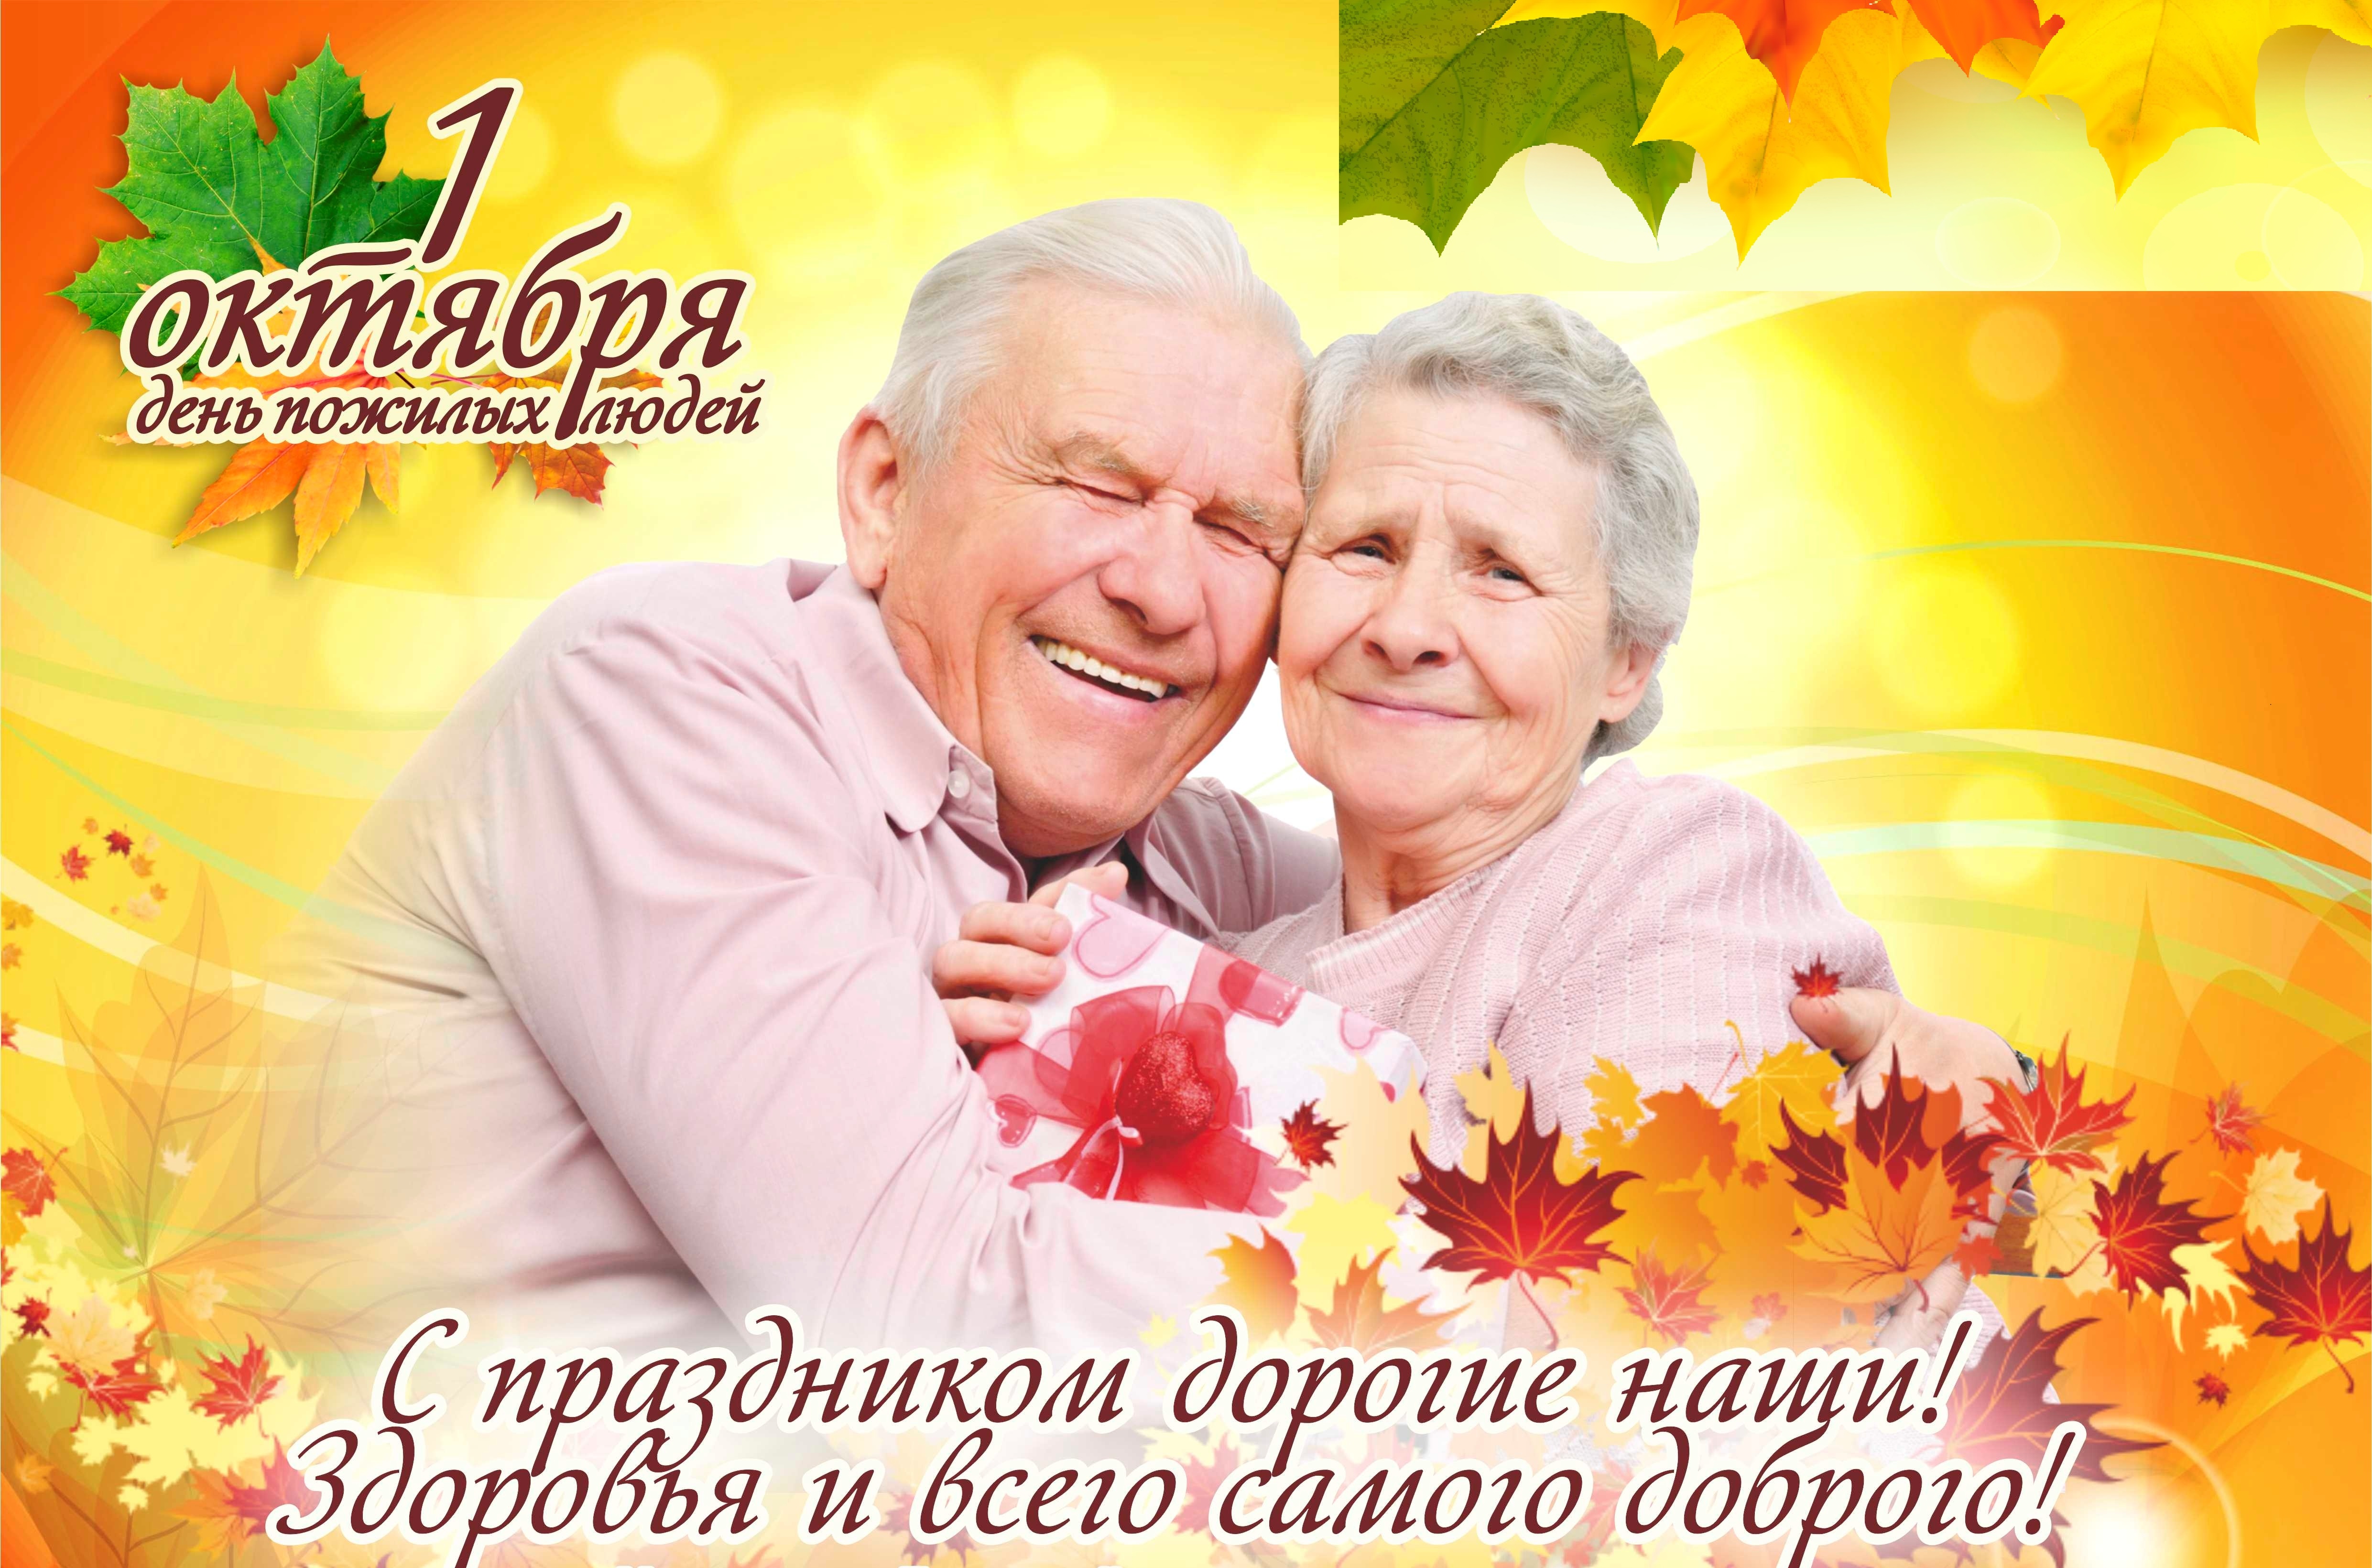 Праздник день пожилых людей. День пожилых. Открытка ко Дню пожилого человека. Международный день пожилого человека. День пожилых людей 2021.